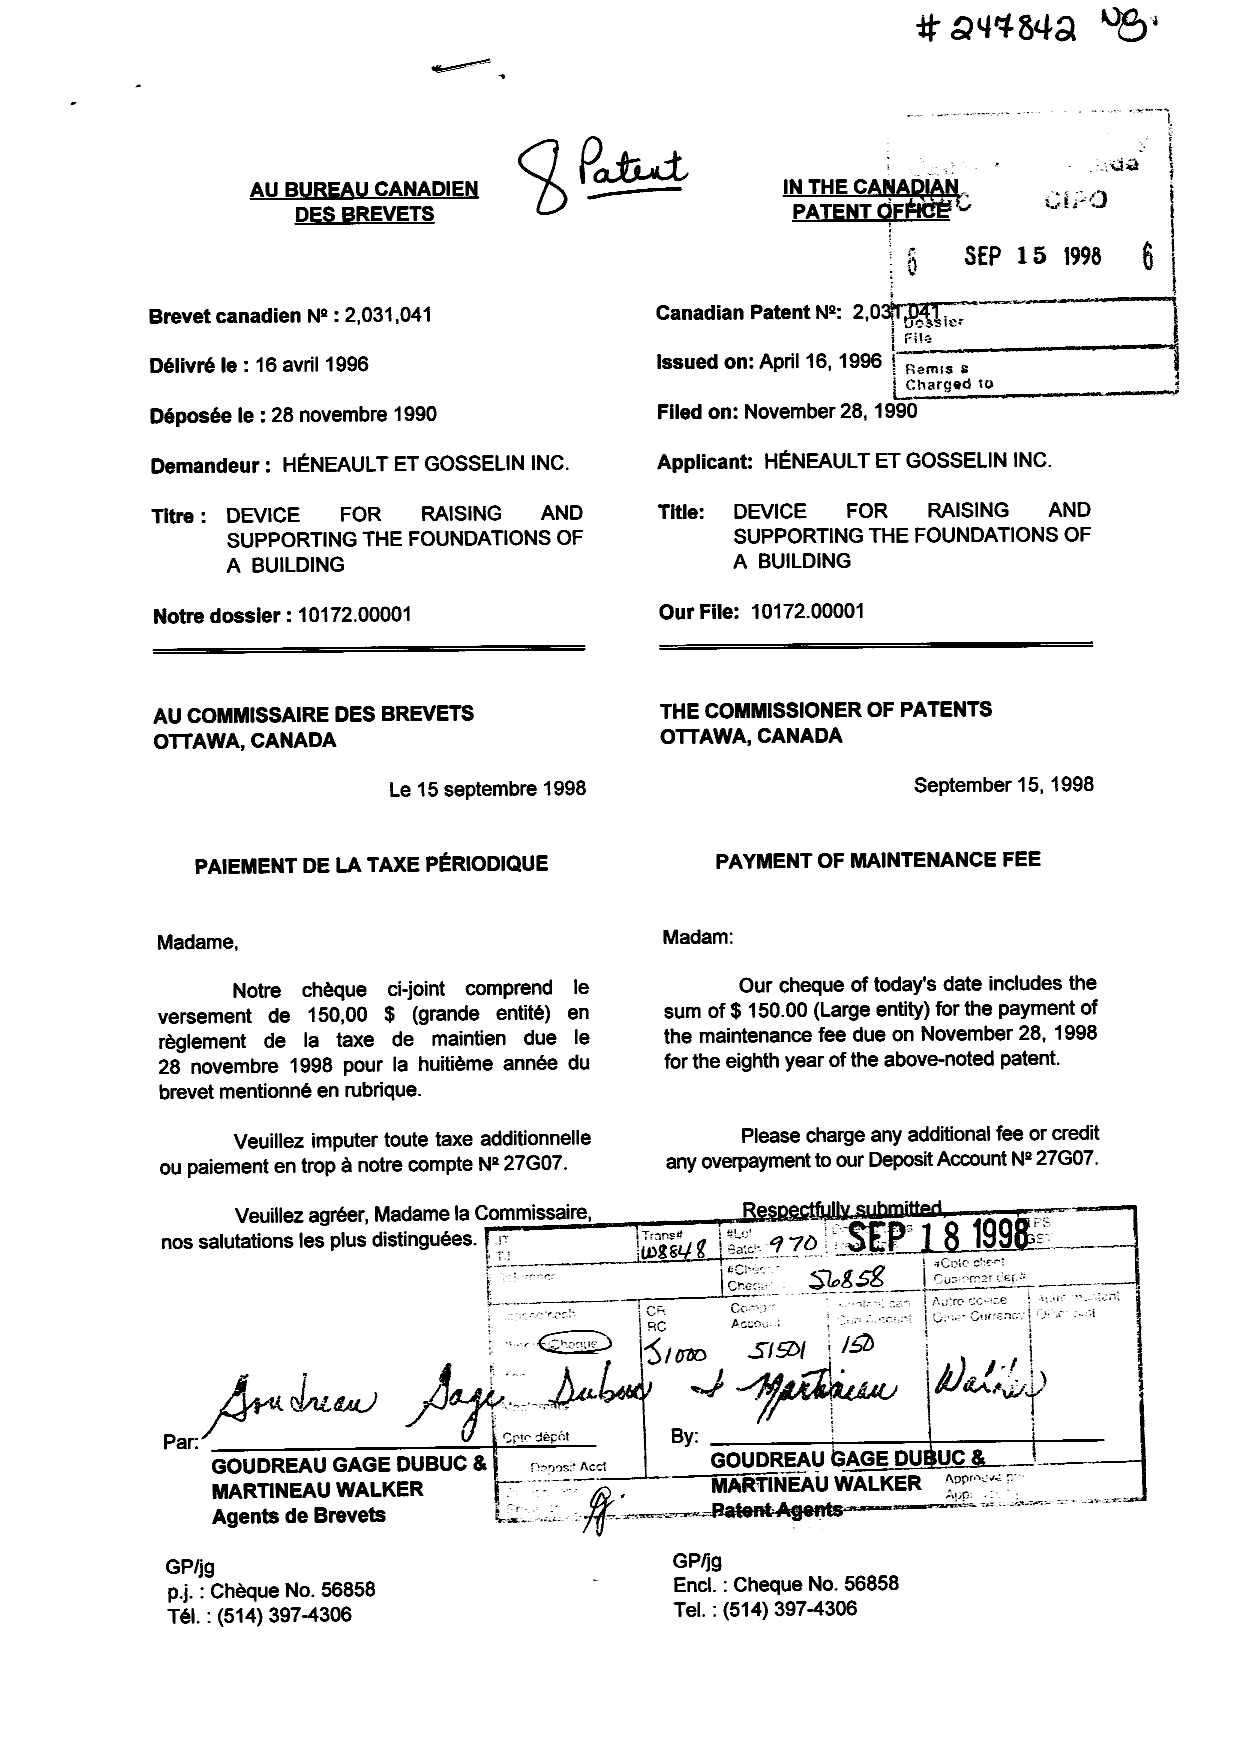 Document de brevet canadien 2031041. Taxes 19971215. Image 1 de 1